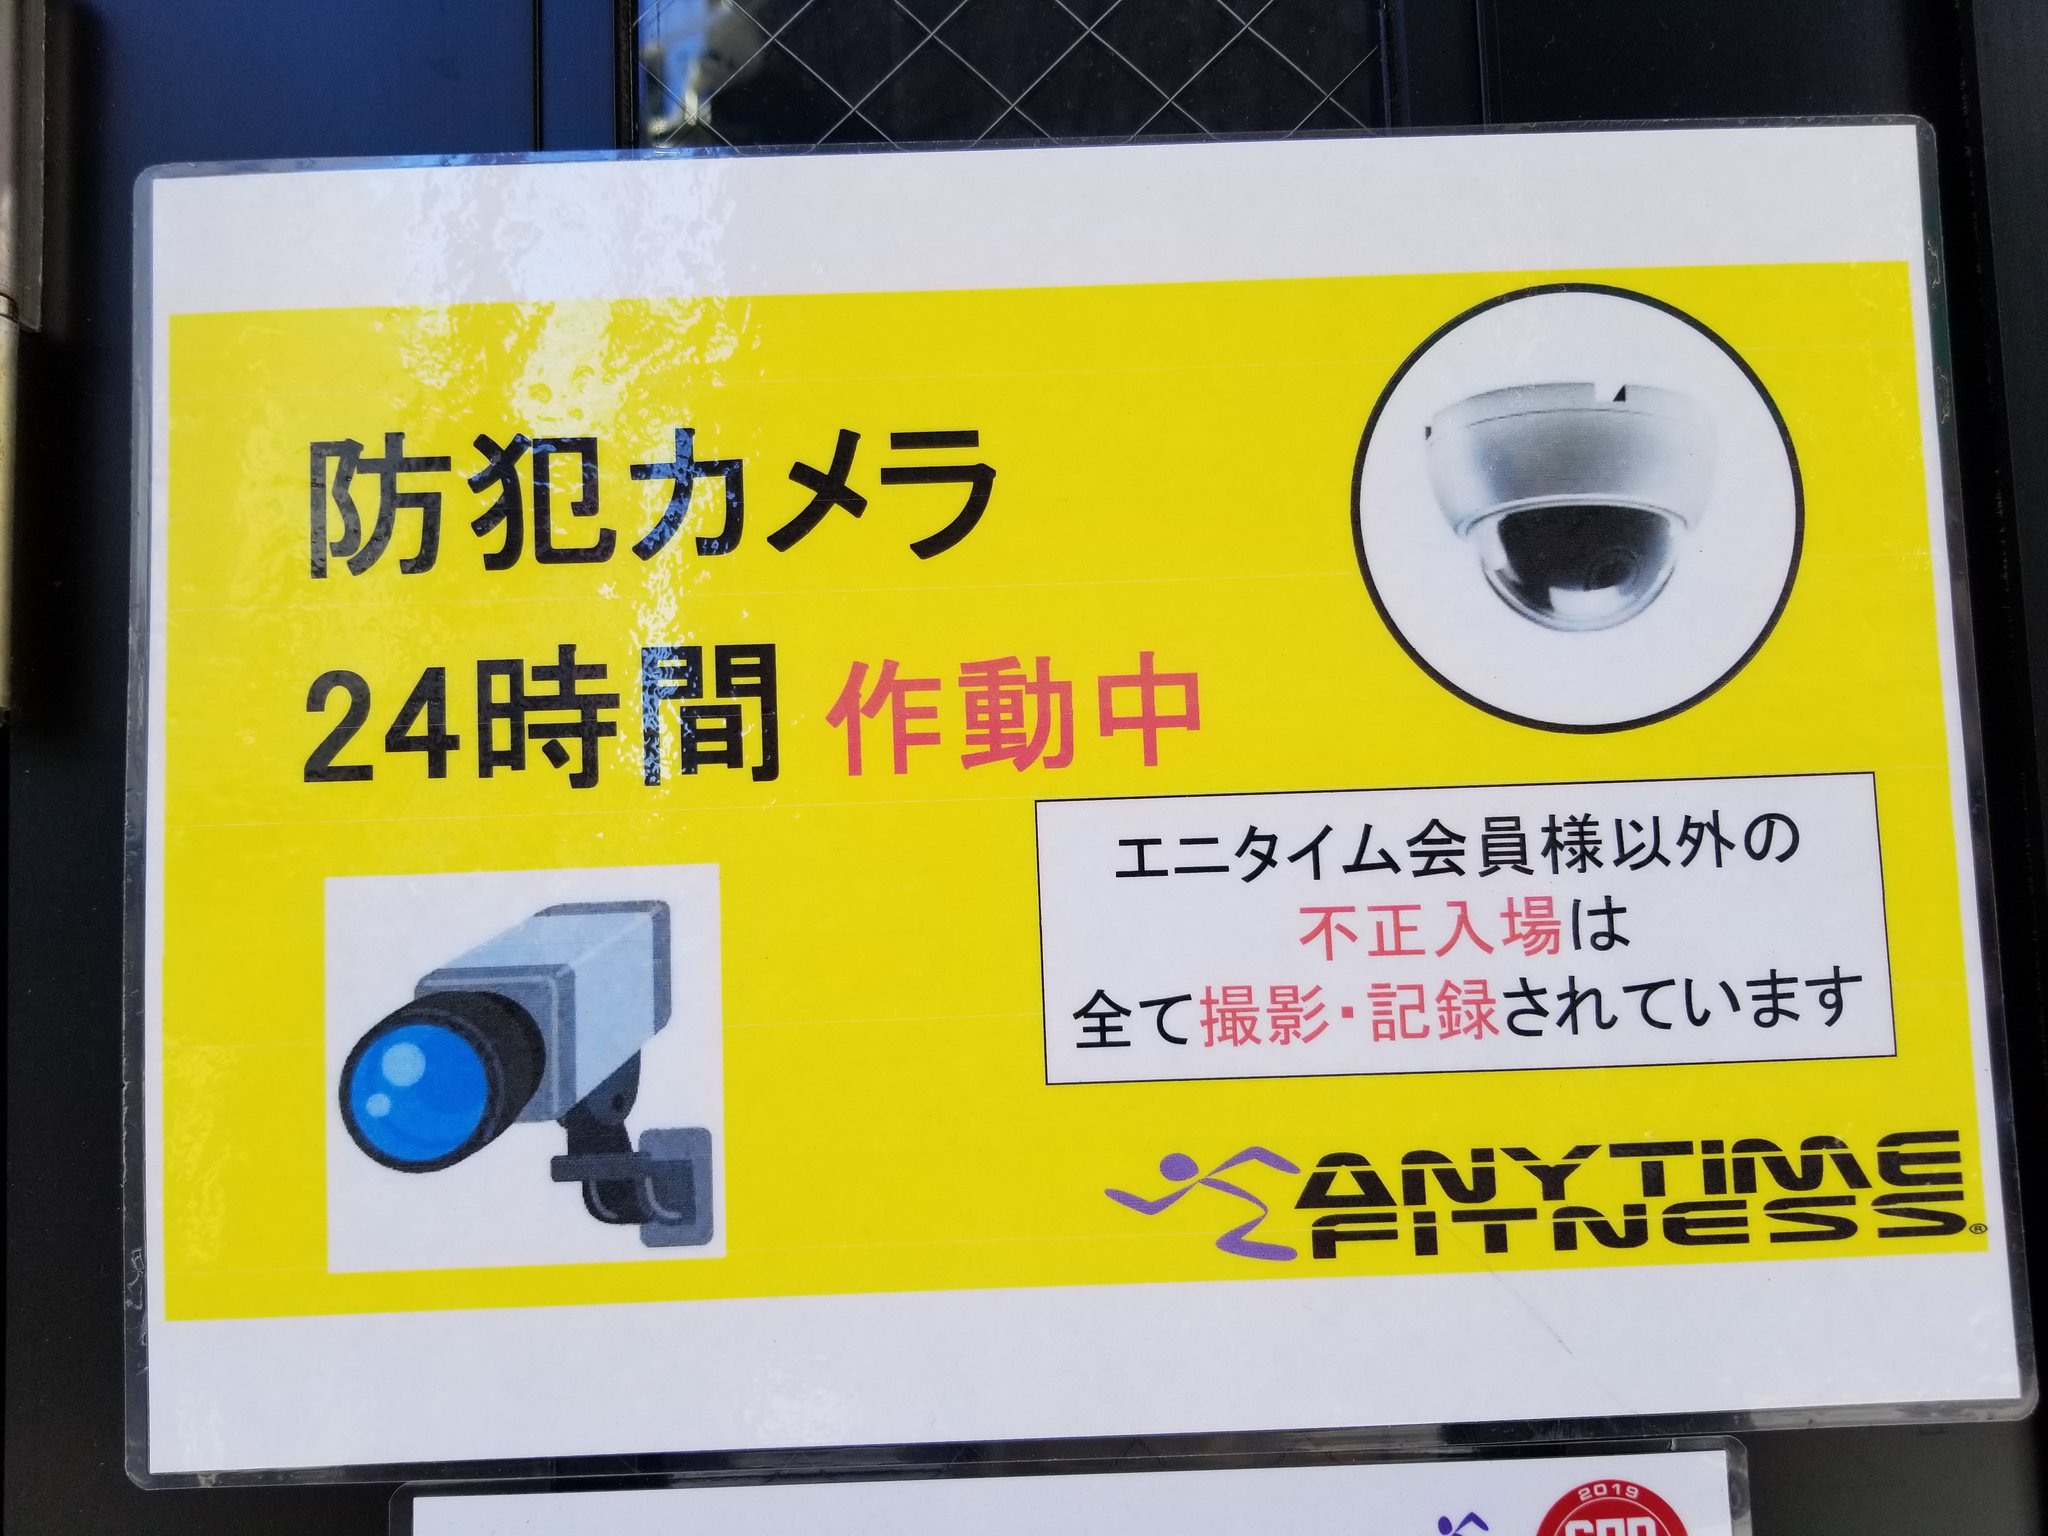 三浦靖雄 登録398号は大岡山のエニタイムフィットネス 防犯カメラ作動中 張り紙 これで 防犯カメラのイラスト は登録5つ目 約400個使用例を集めてきましたが防犯カメラがいらすとや内で最も使用例の多いイラスト いらすとやマッピング いらすとや